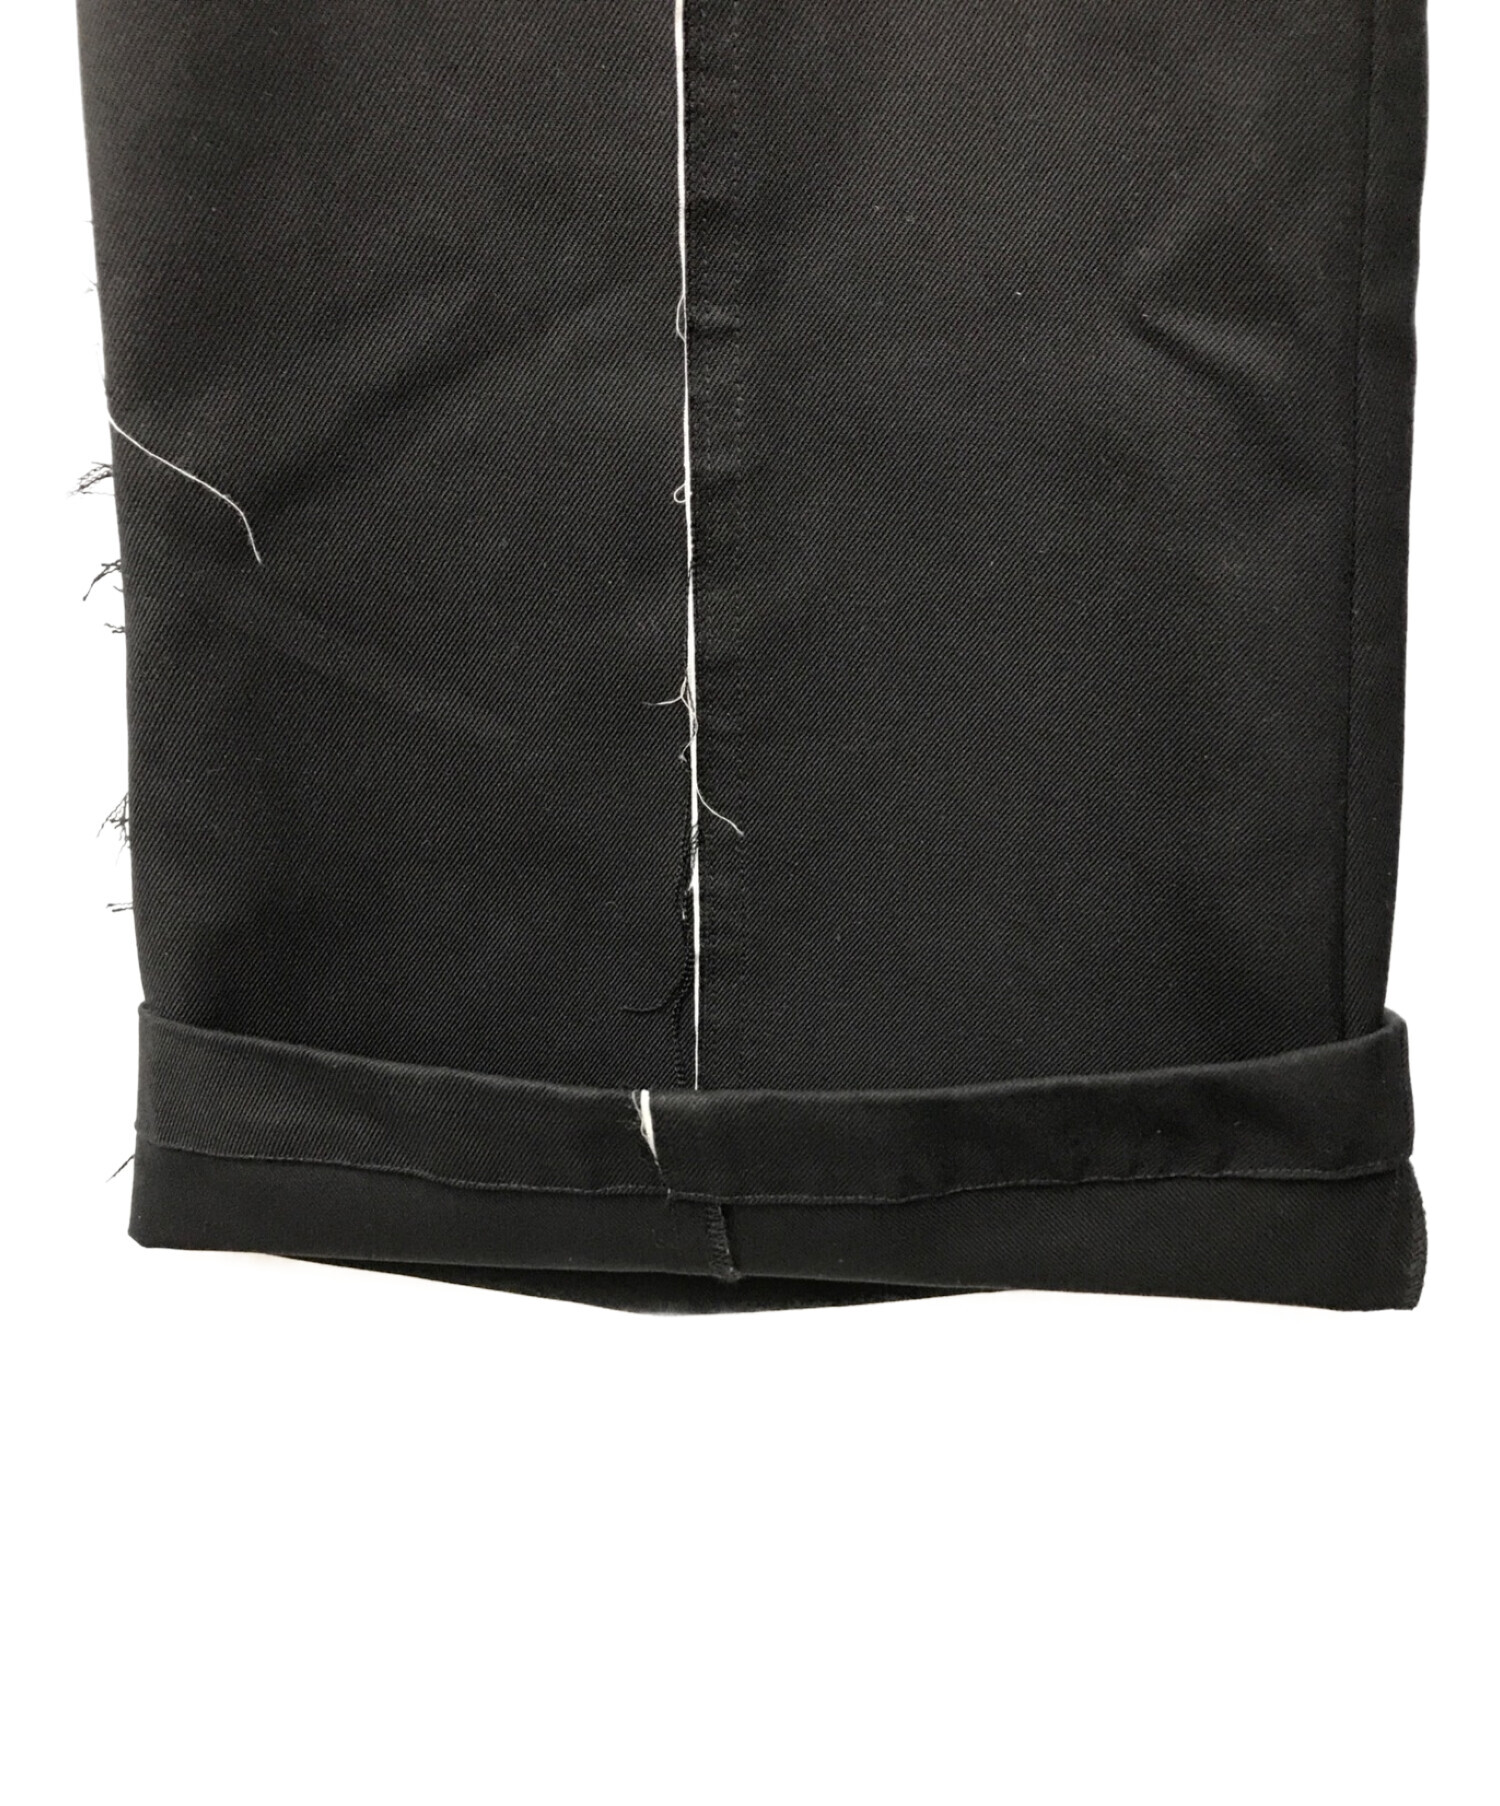 seyto (セイト) Damage line flare pants ダメージラインフレアパンツ ブラック サイズ:1